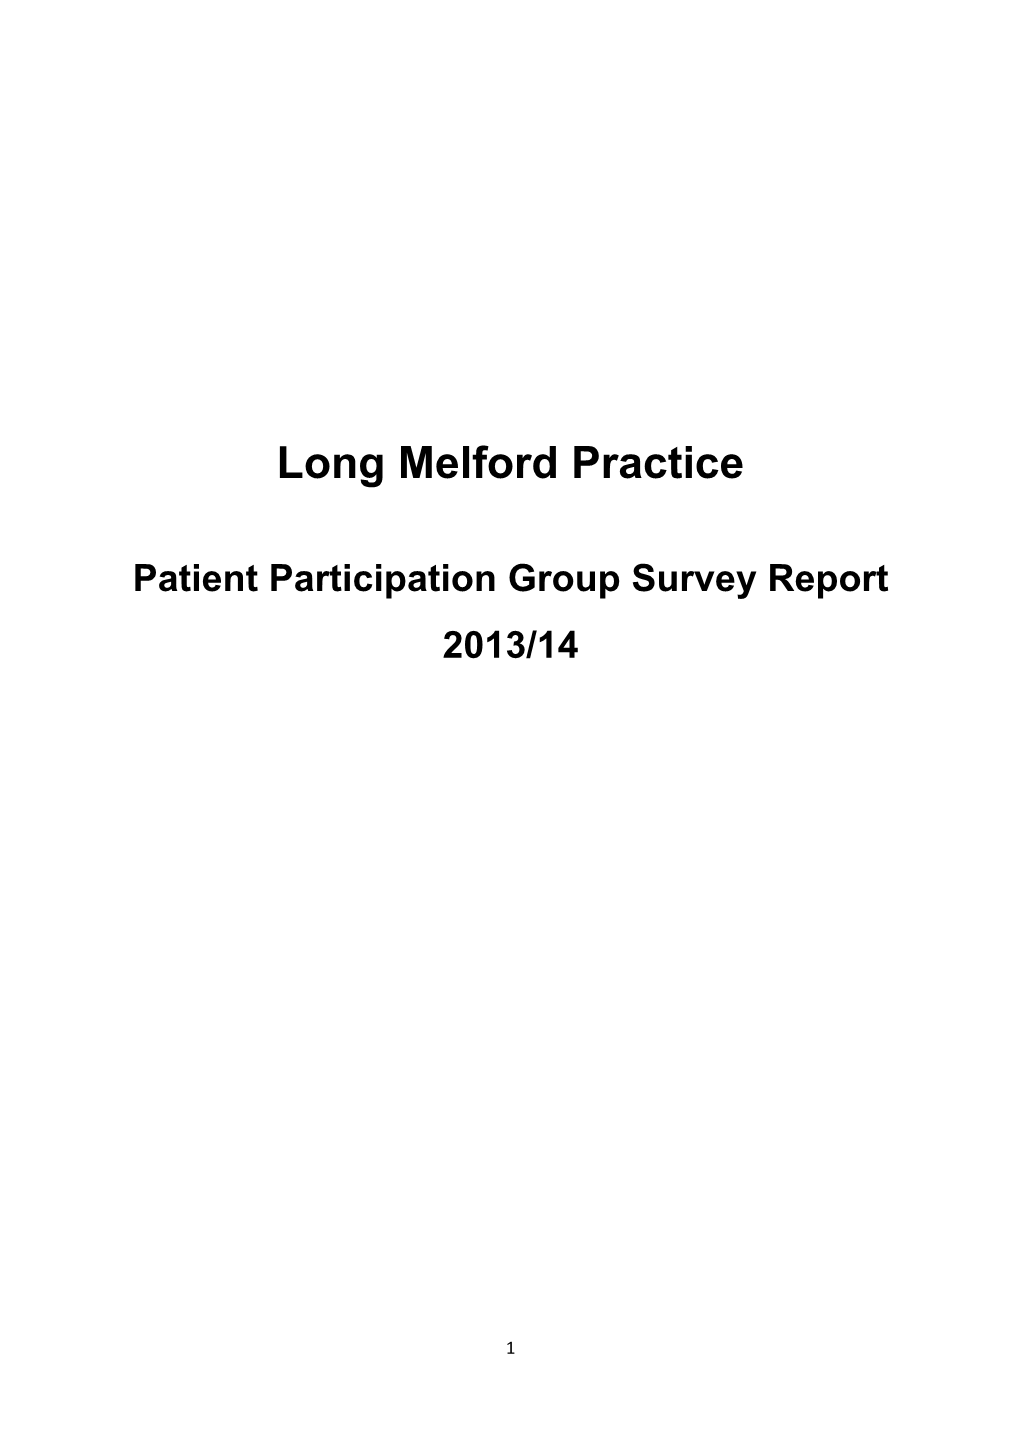 Patient Participation Group Survey Report 2013/14